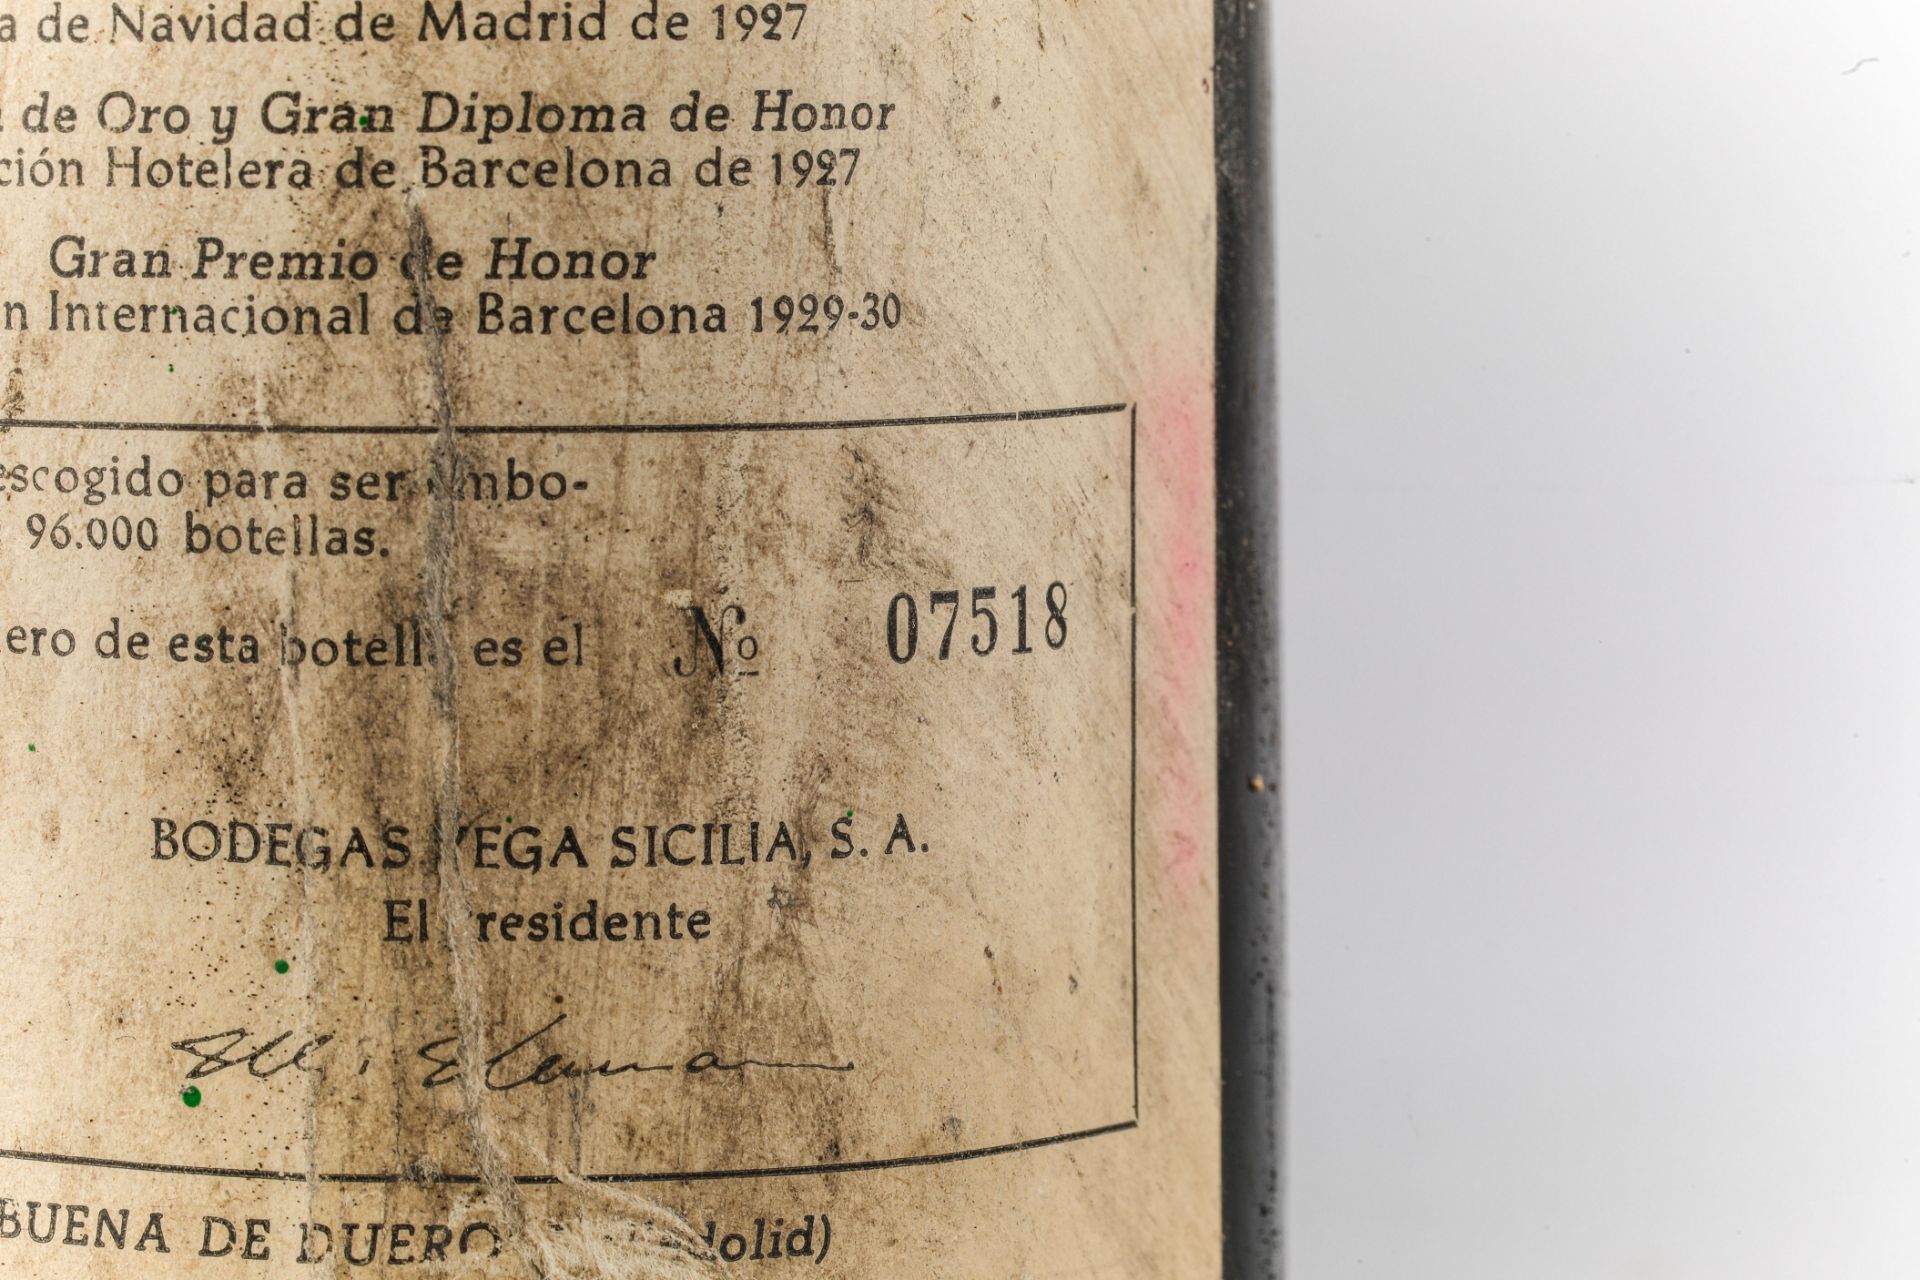 VEGA SICILIA UNICO. 1966. Ribera del Duero. Bouteille N°07518 sur production de 96 000 bouteilles. - Bild 2 aus 4